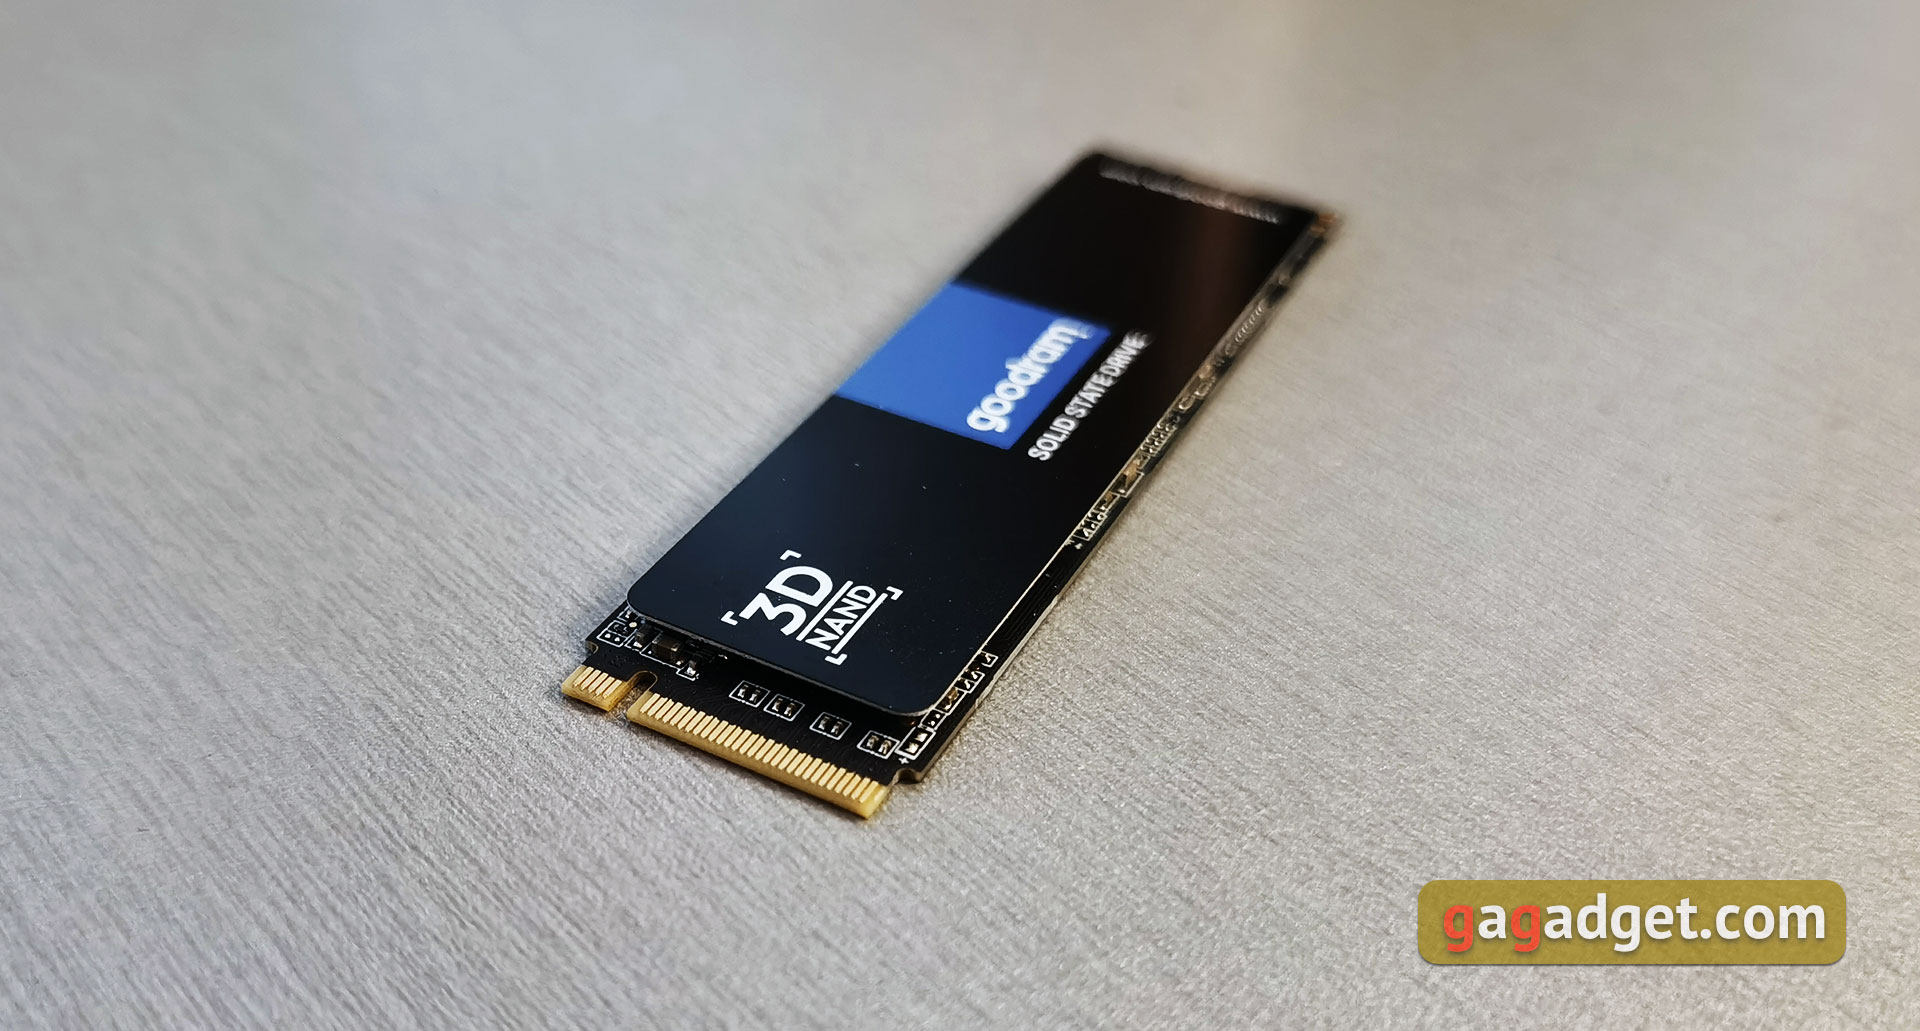 Обзор Goodram PX500: быстрый и недорогой PCIe NVMe SSD-накопитель-12